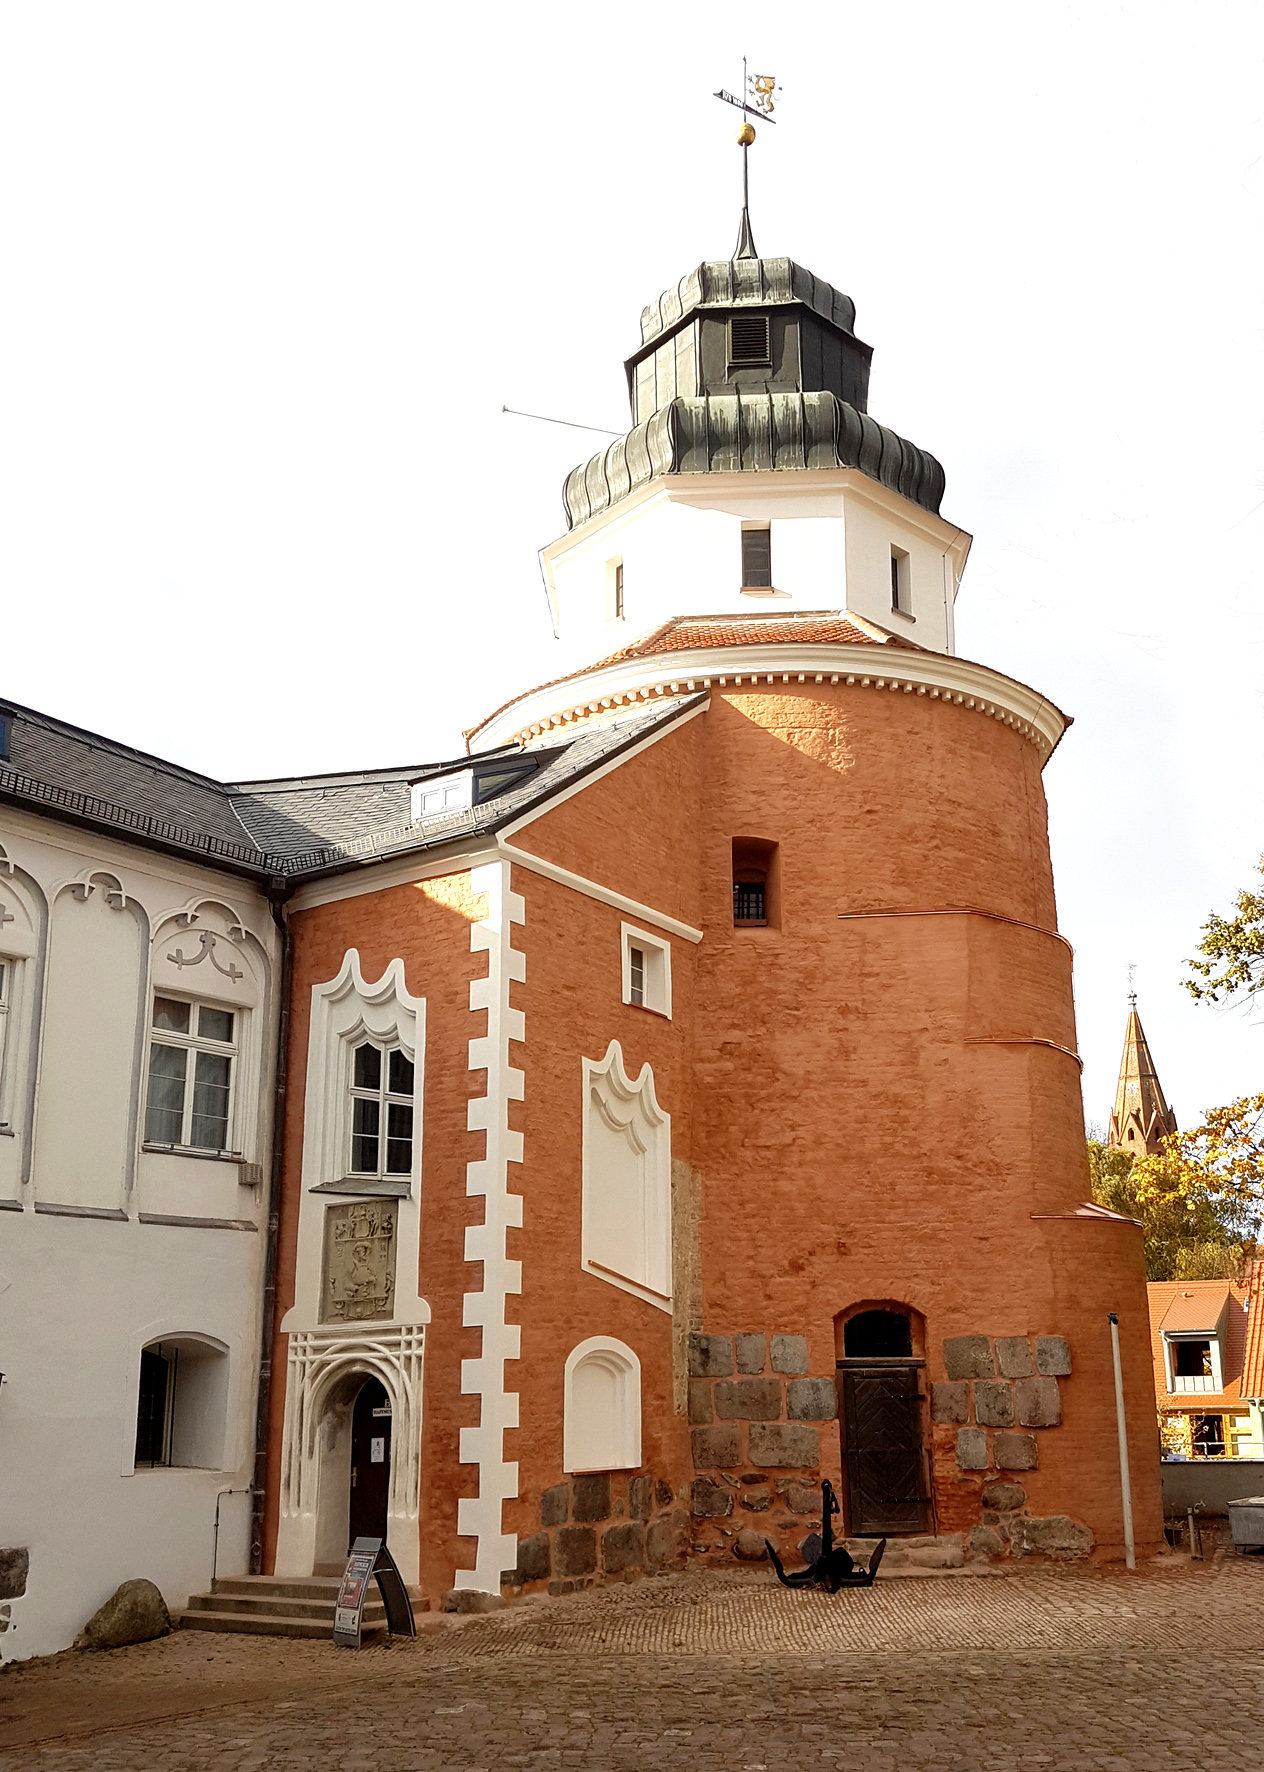 Schlossturm in Ueckermünde